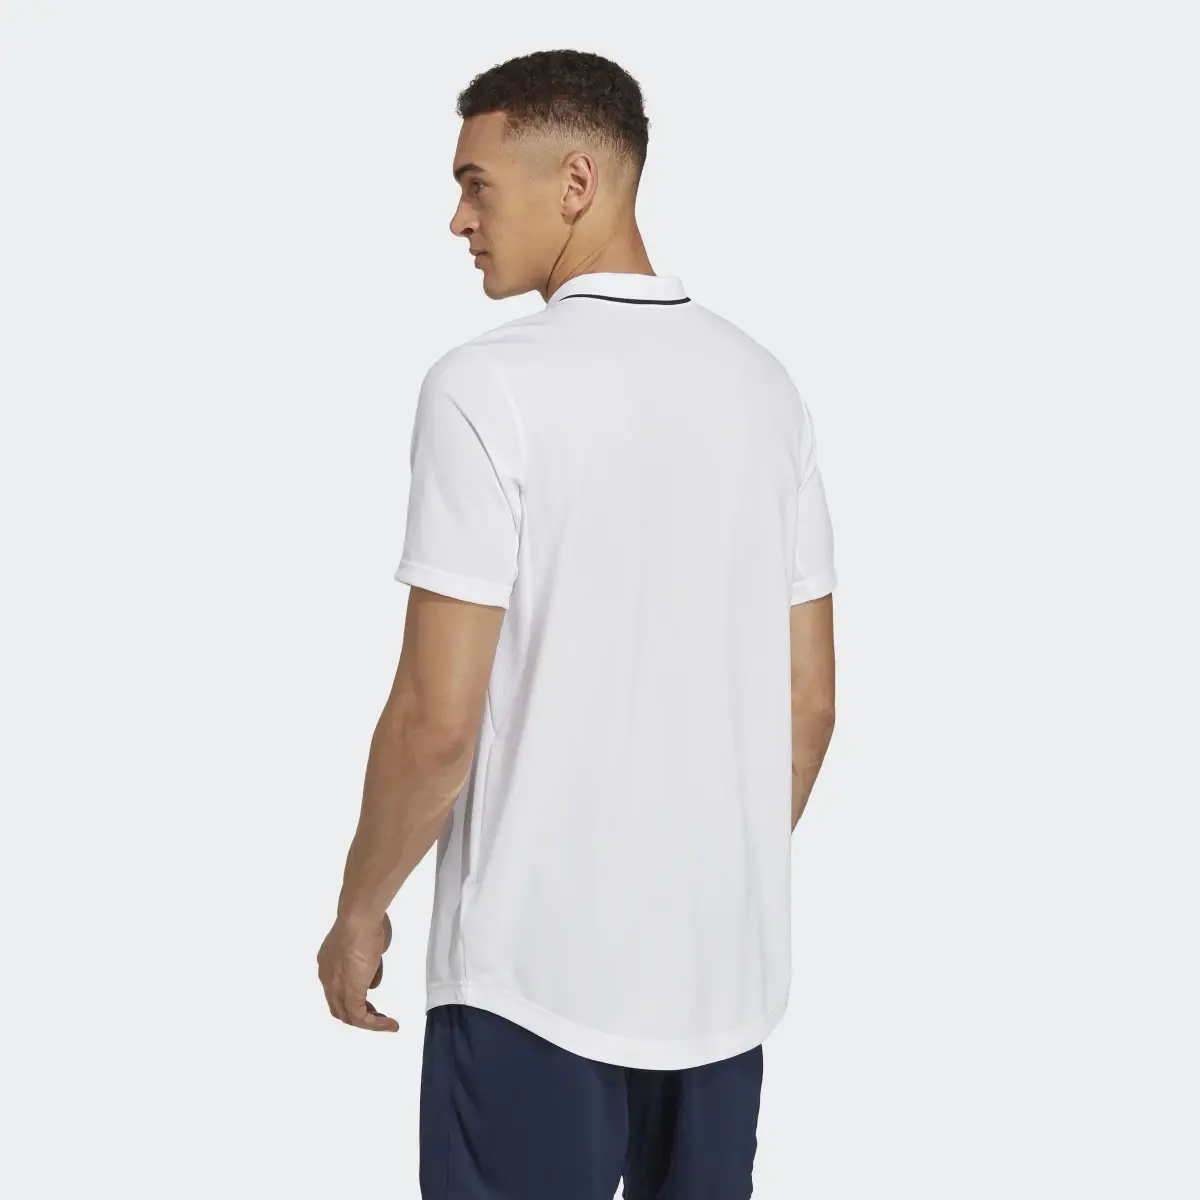 Adidas Club Tennis Piqué Polo Shirt. 3